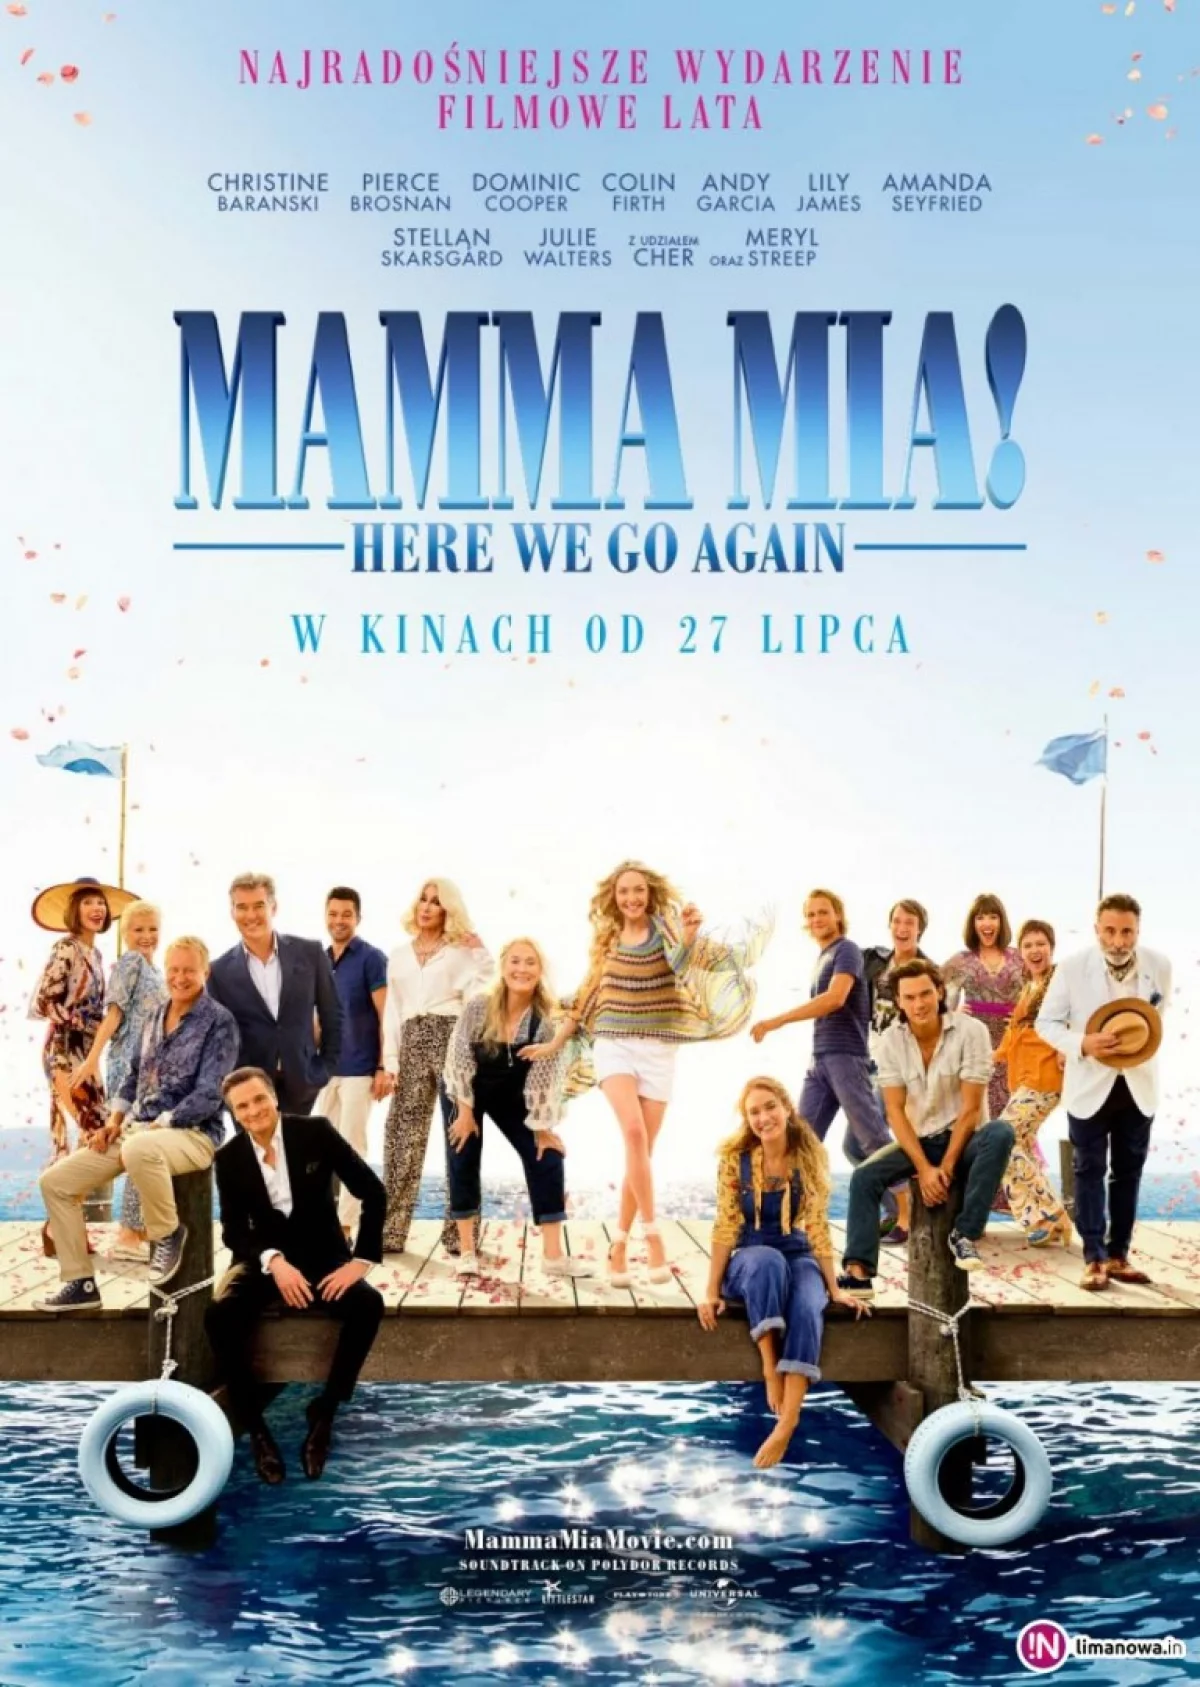 Premiera w kinie Klaps - „Mamma Mia: Here We Go Again” na ekranie od 27 lipca